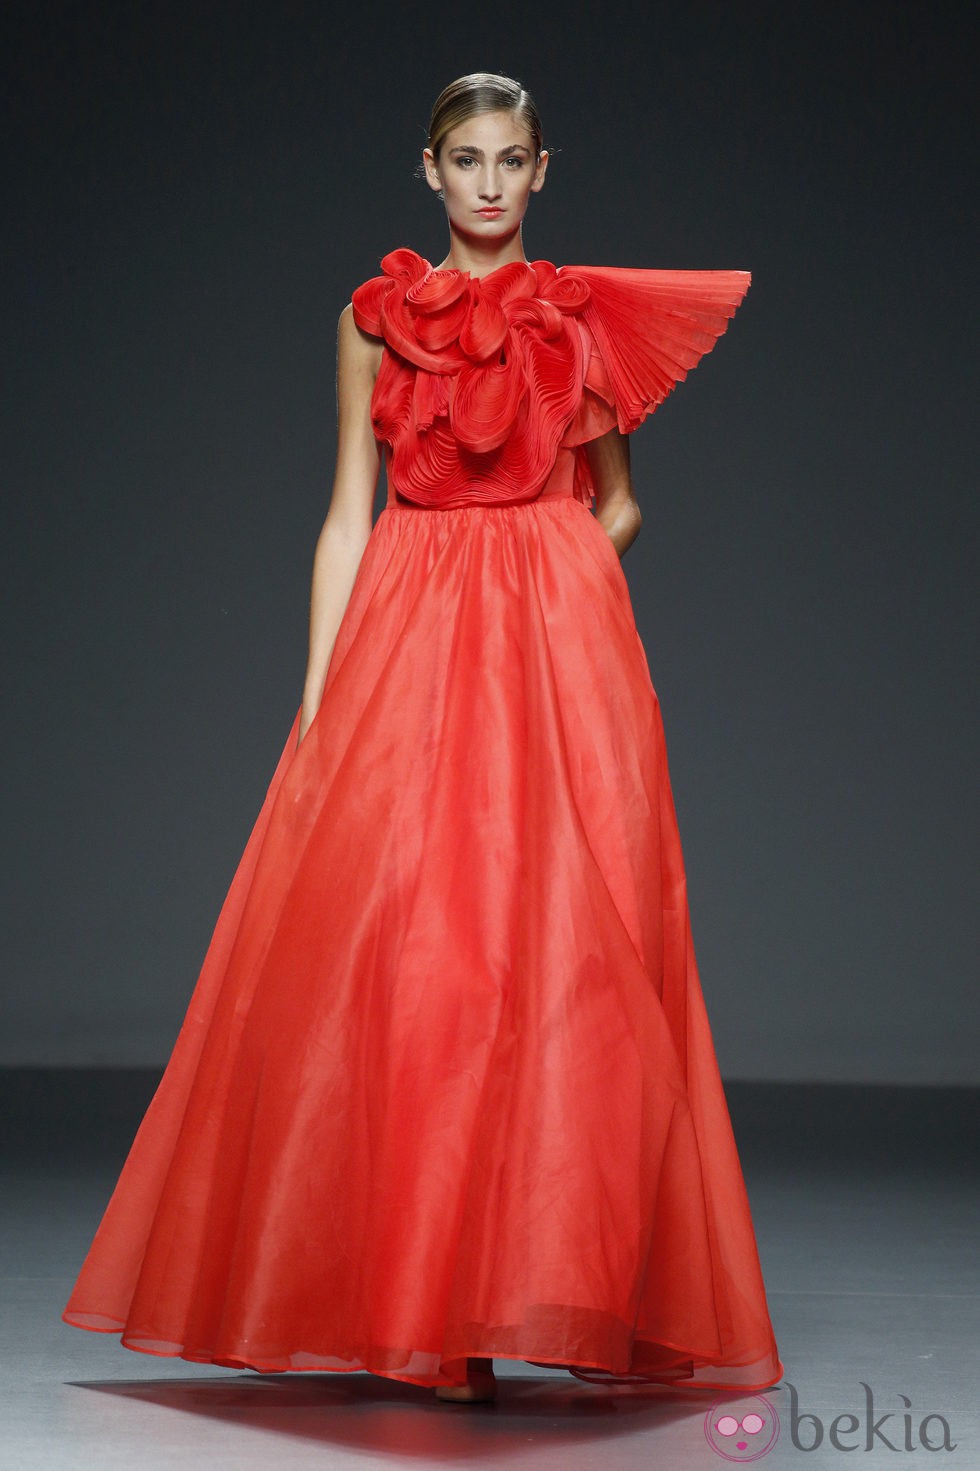 Vestido rojo de Eva Soto Conde en EGO Madrid Fashion Week primavera/verano 2015